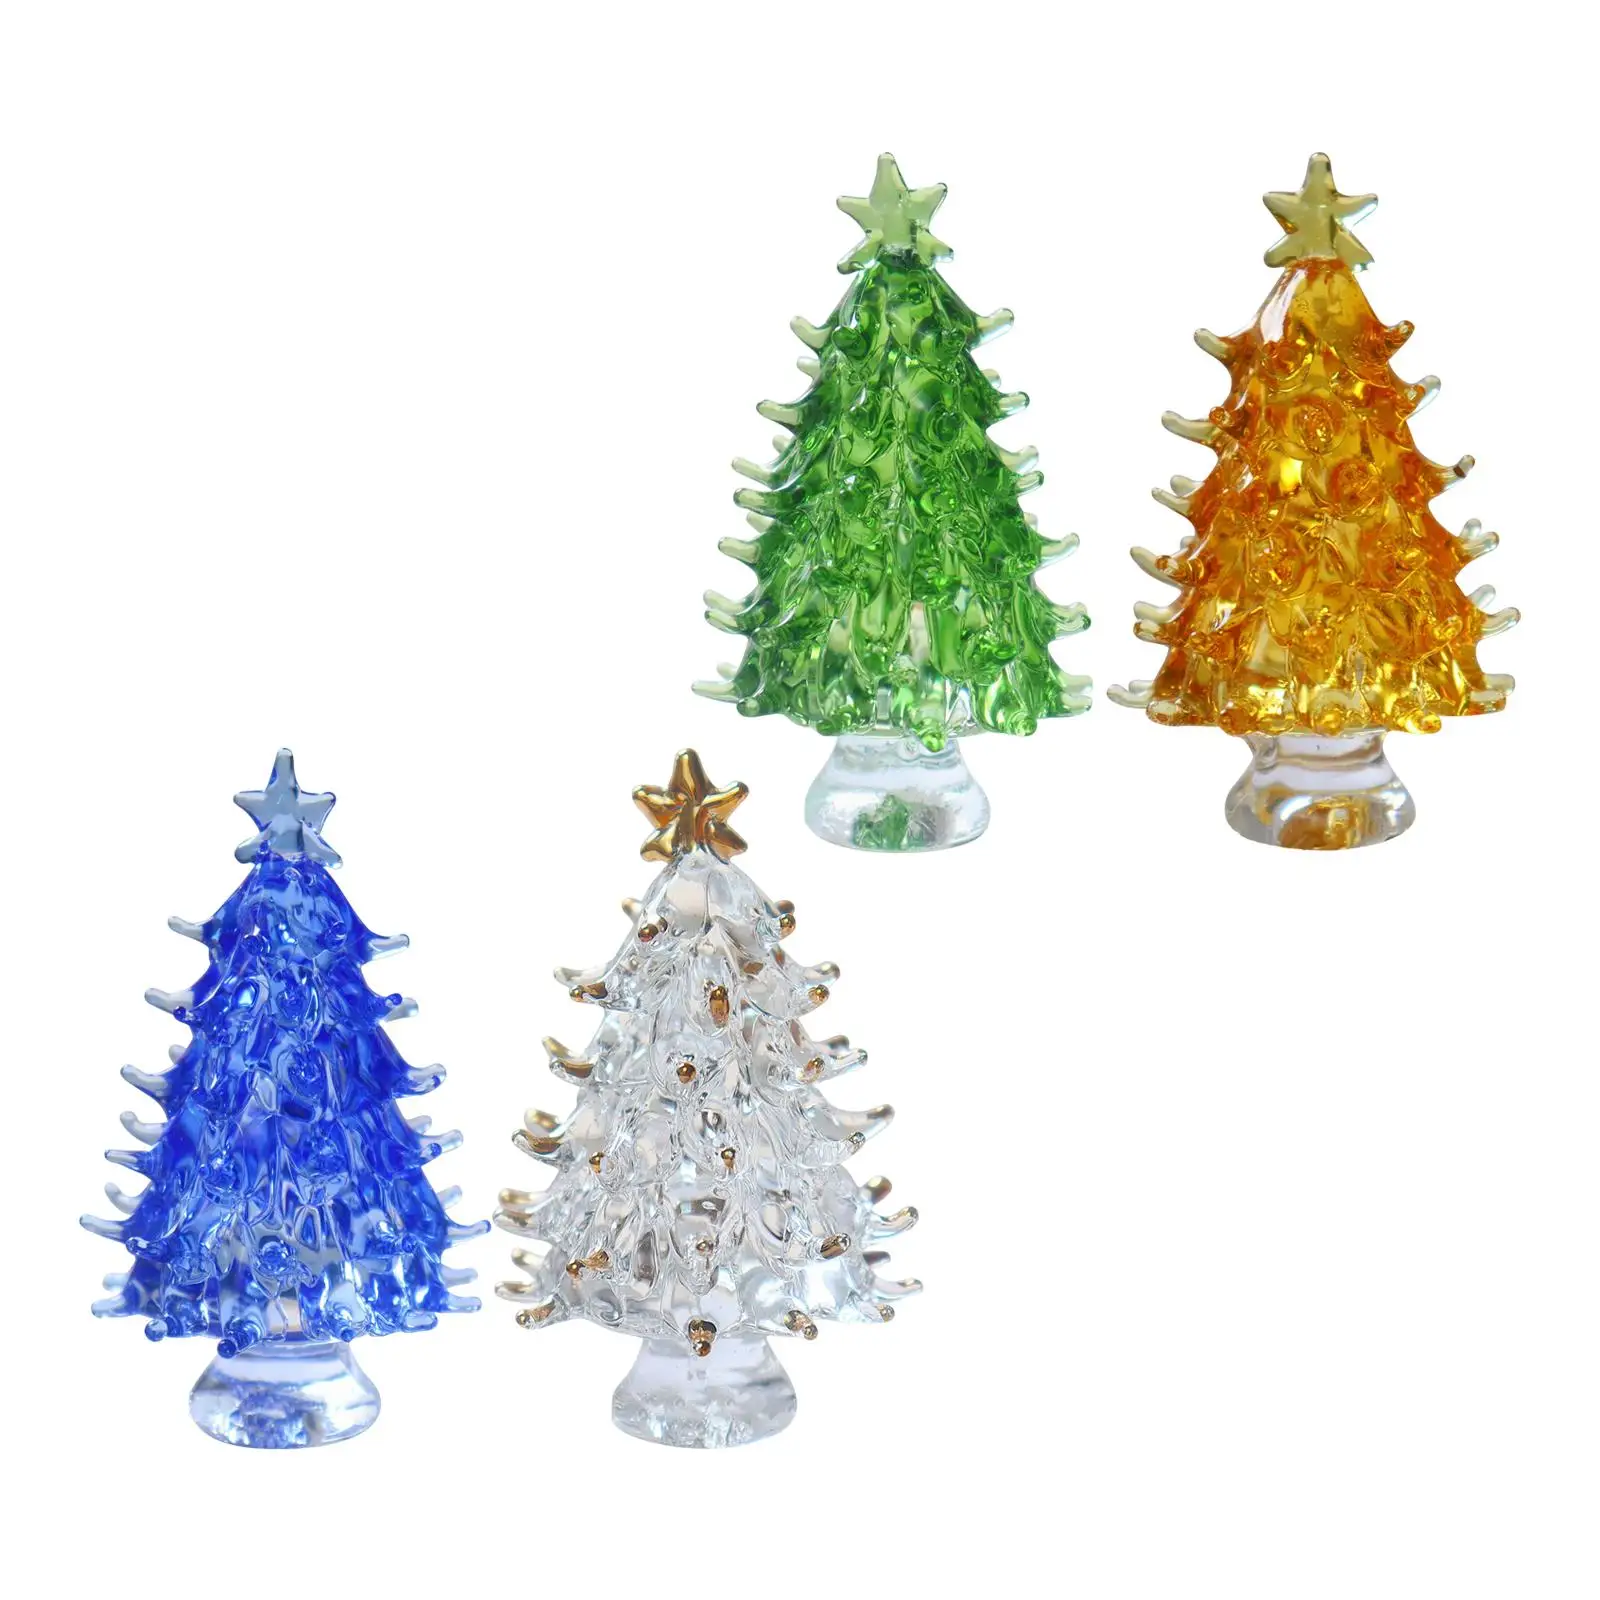 Small Crystal Christmas Tree Figurine Ornament for Christmas Holiday Decor